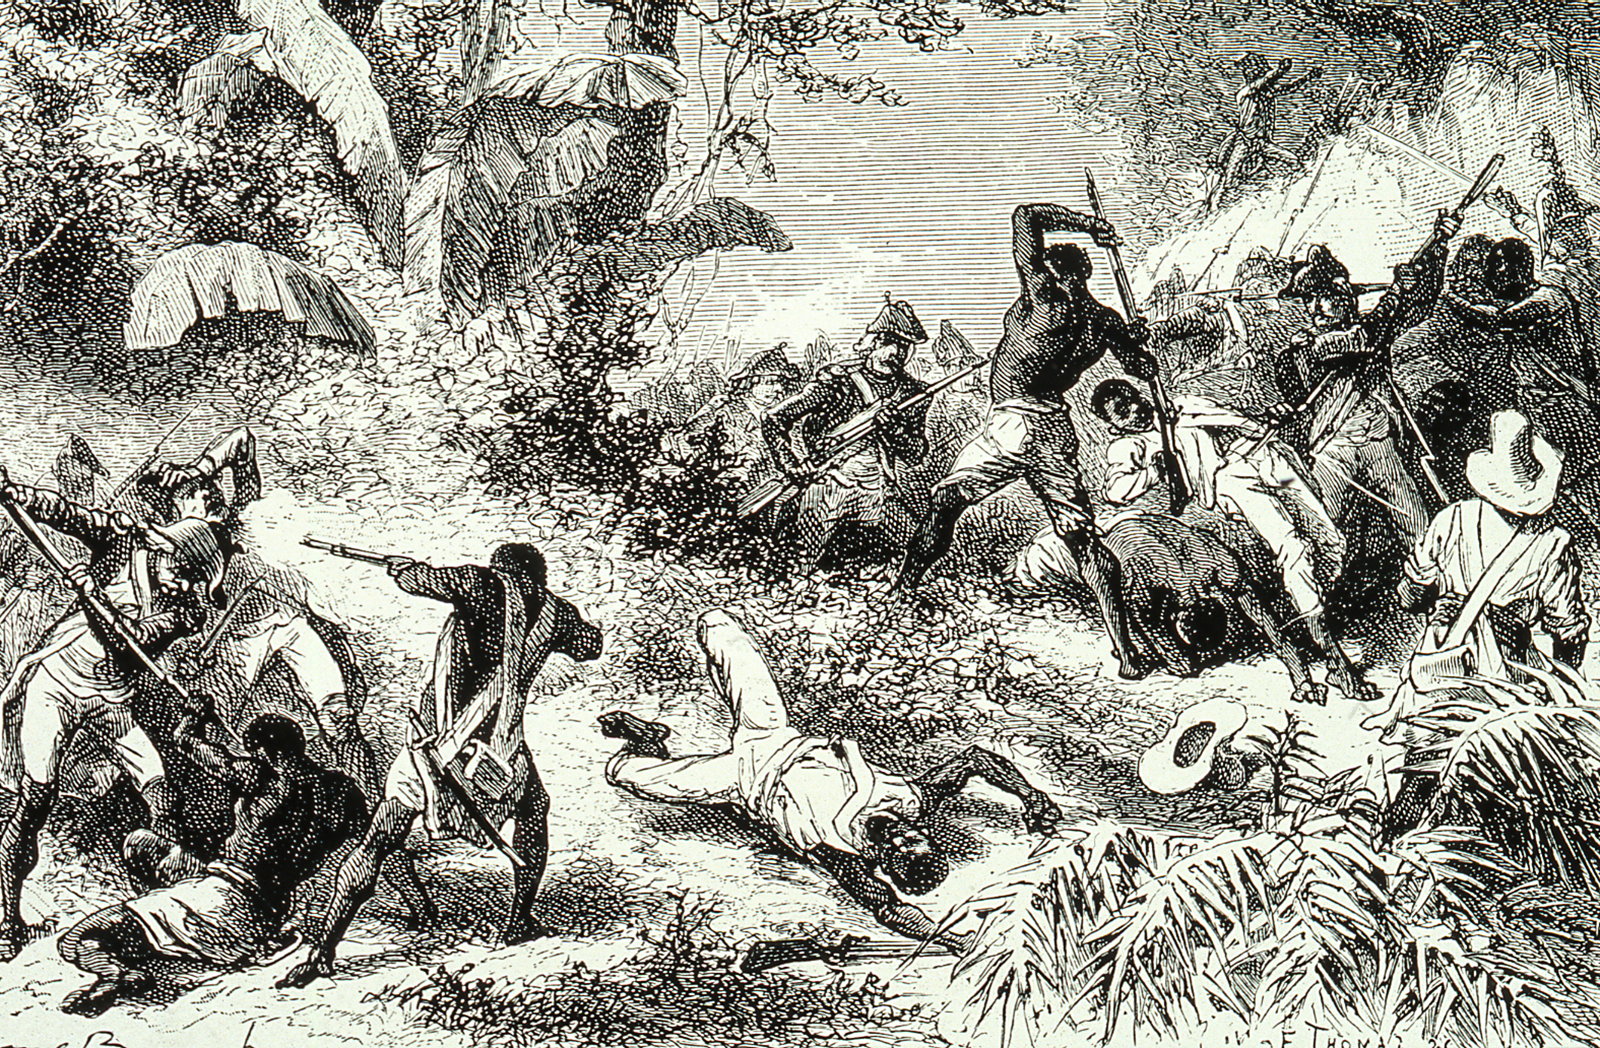 Combat entre les esclaves et l'armée française lors de la révolution haïtienne, en 1791. (Image by API/Gamma-Rapho via Getty Images)